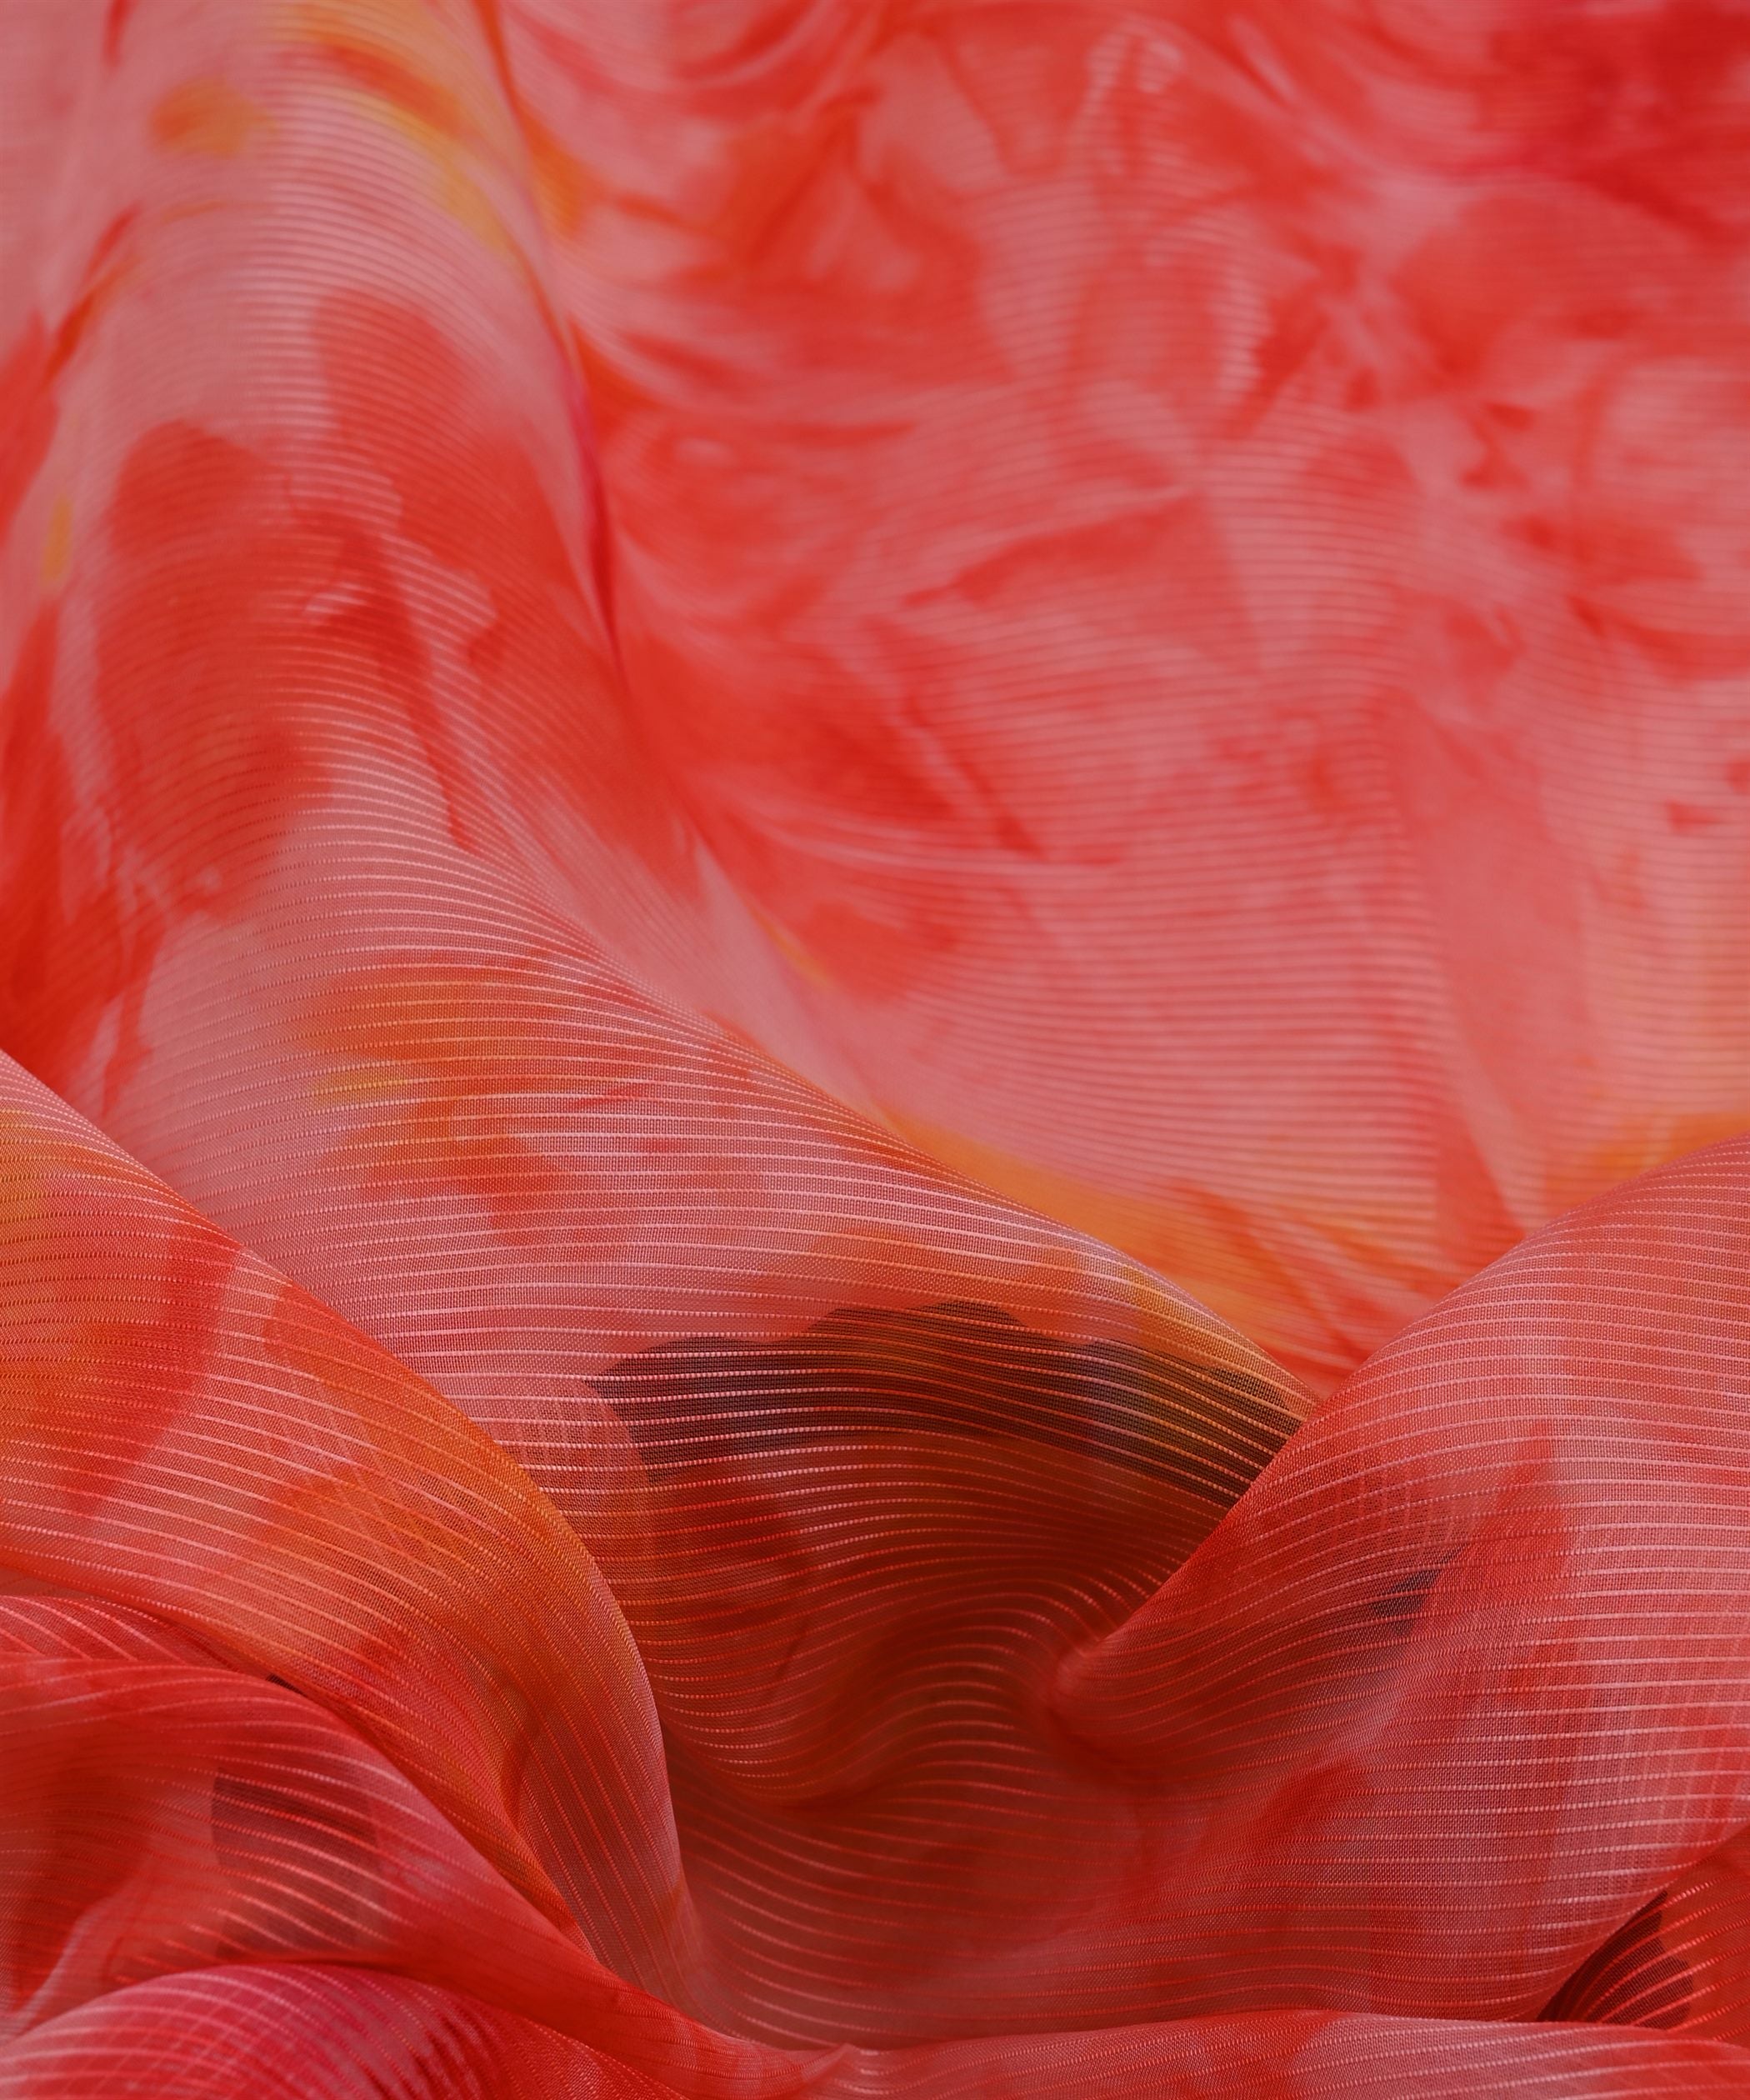 Red Organza Fabric with Shibori Print